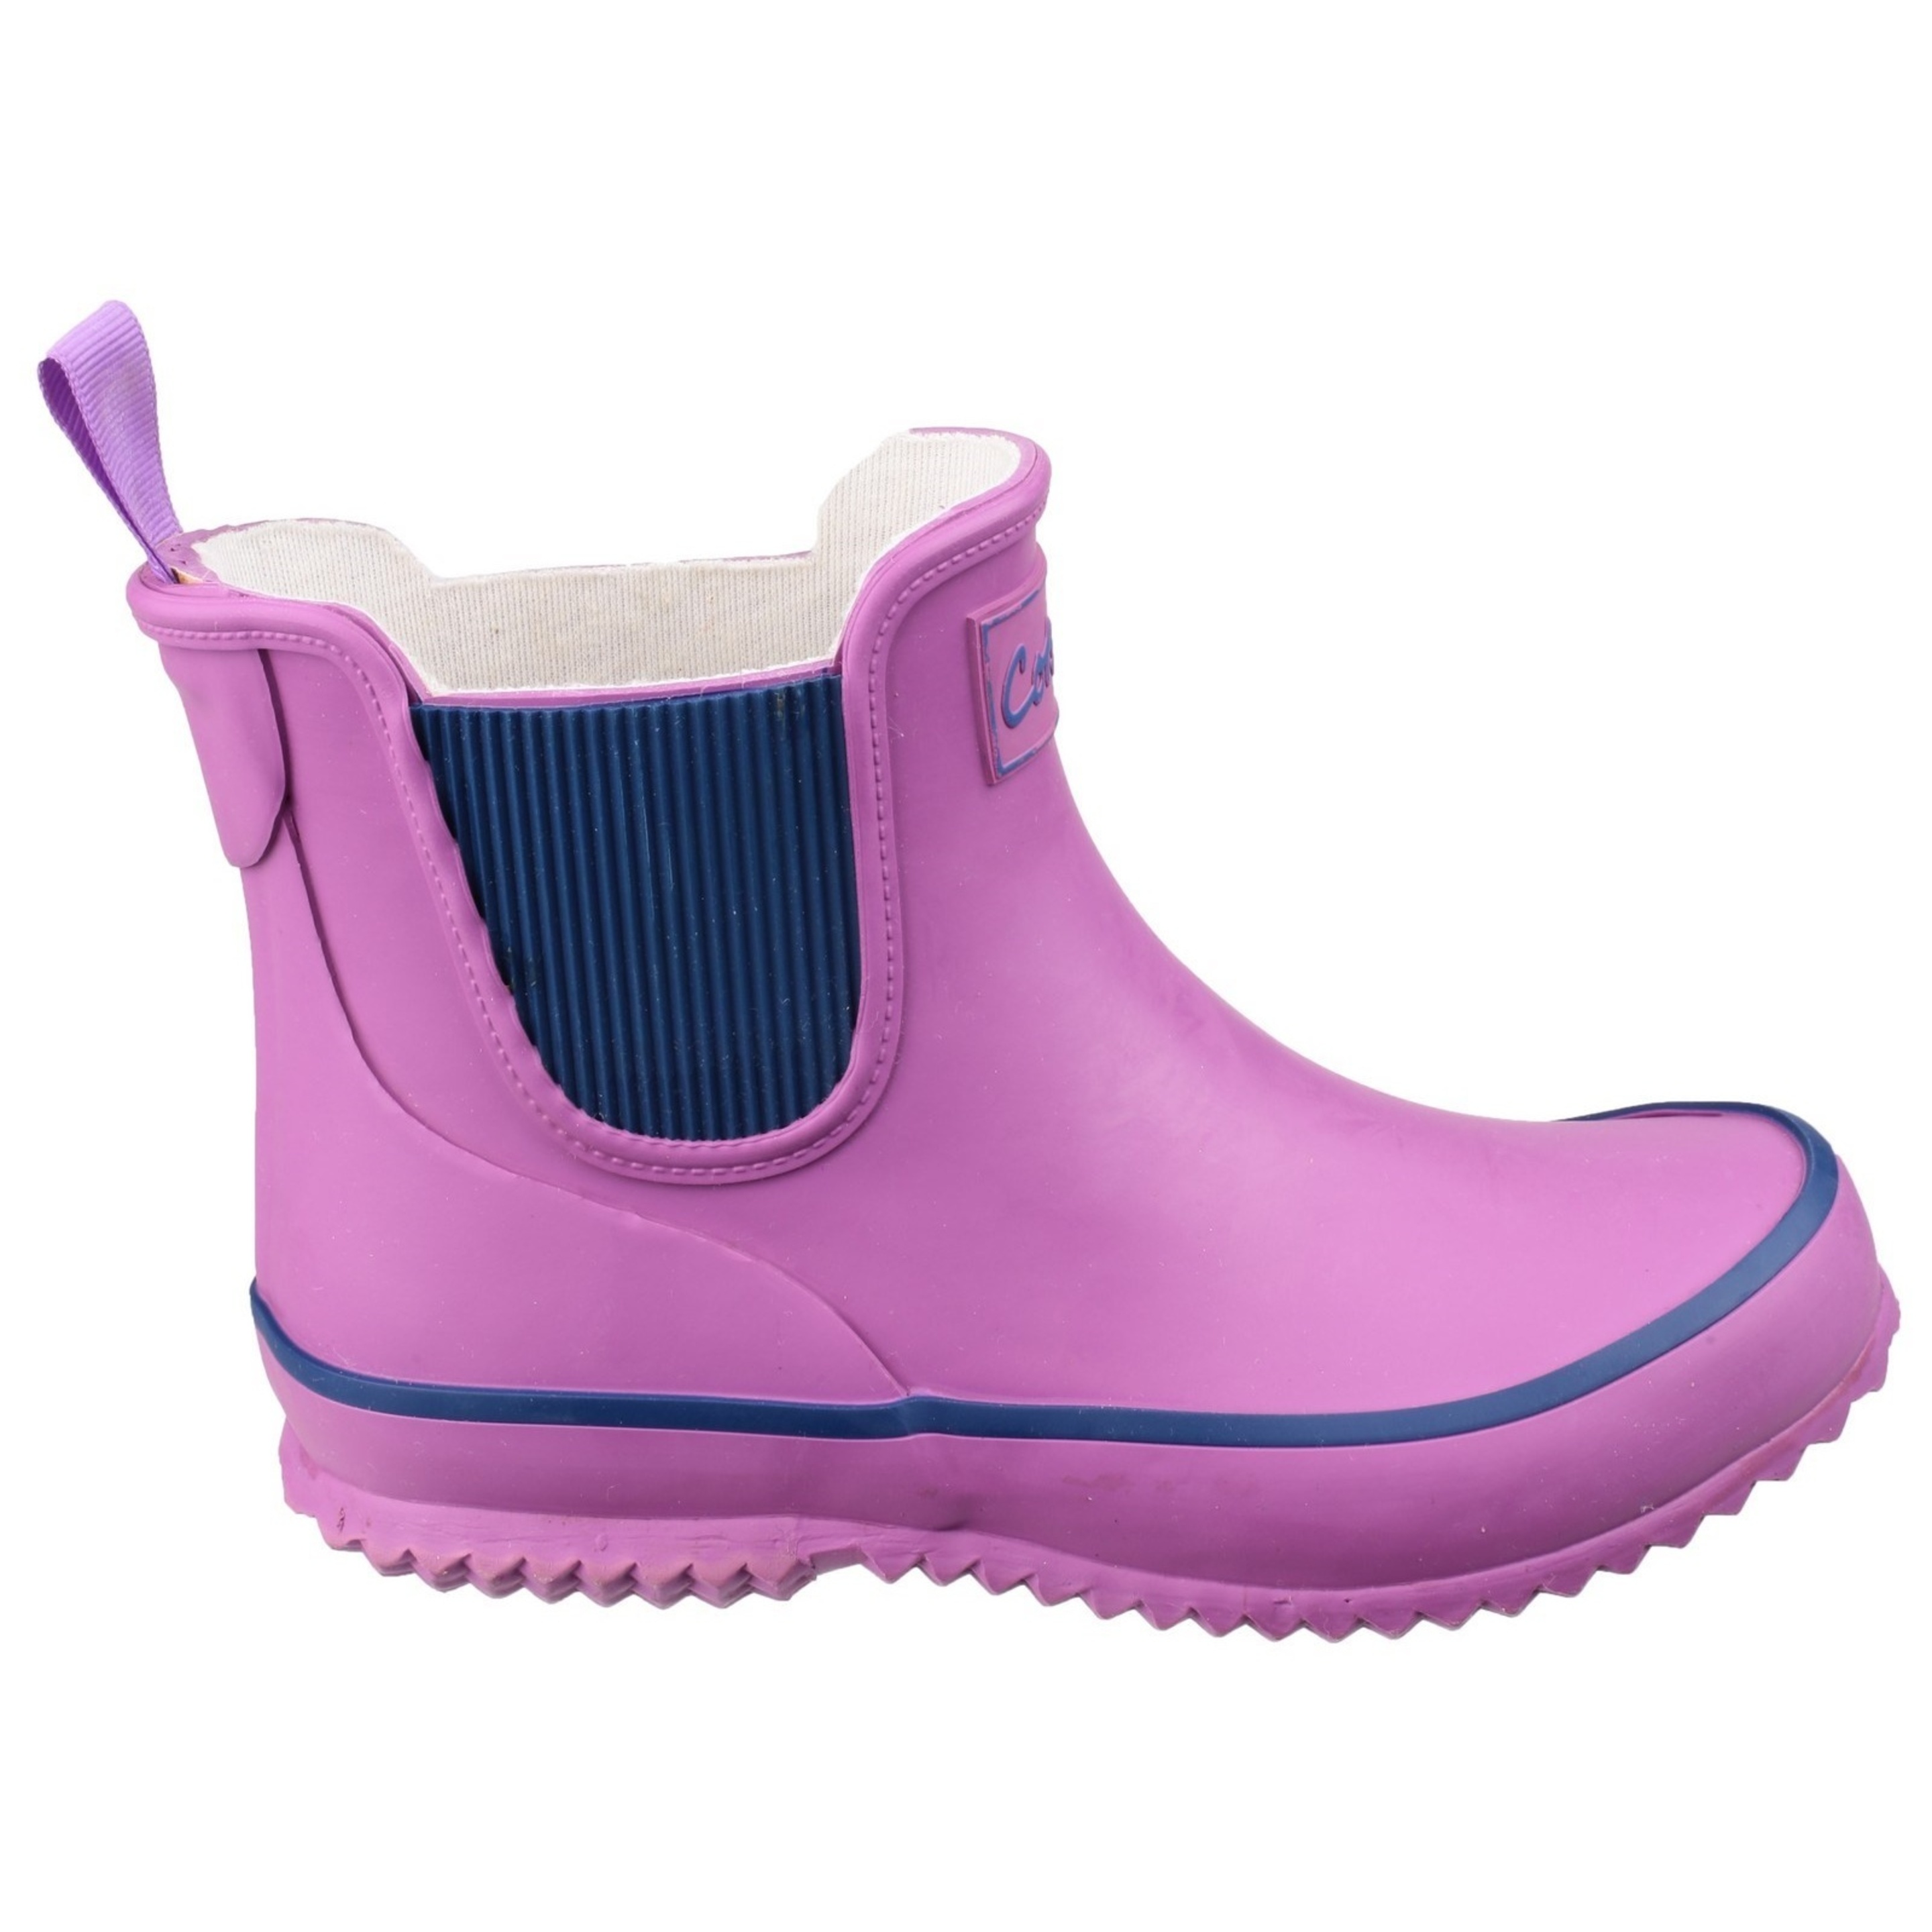 Crianças/ Crianças Botas Bushy Wellington Boots Cotswold (Púrpura)